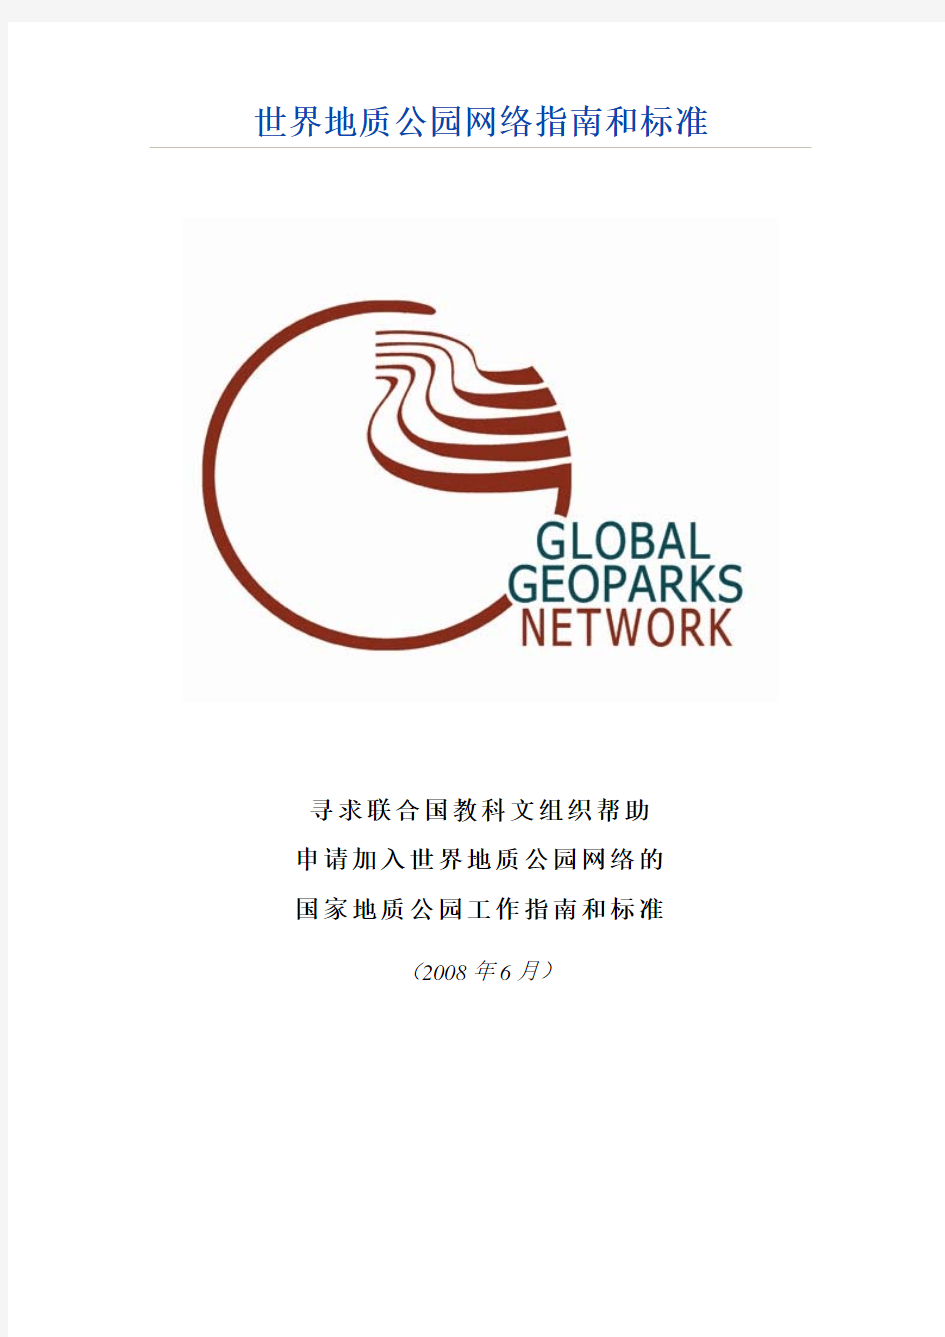 《世界地质公园网络工作指南和标准》2008年版本-中文